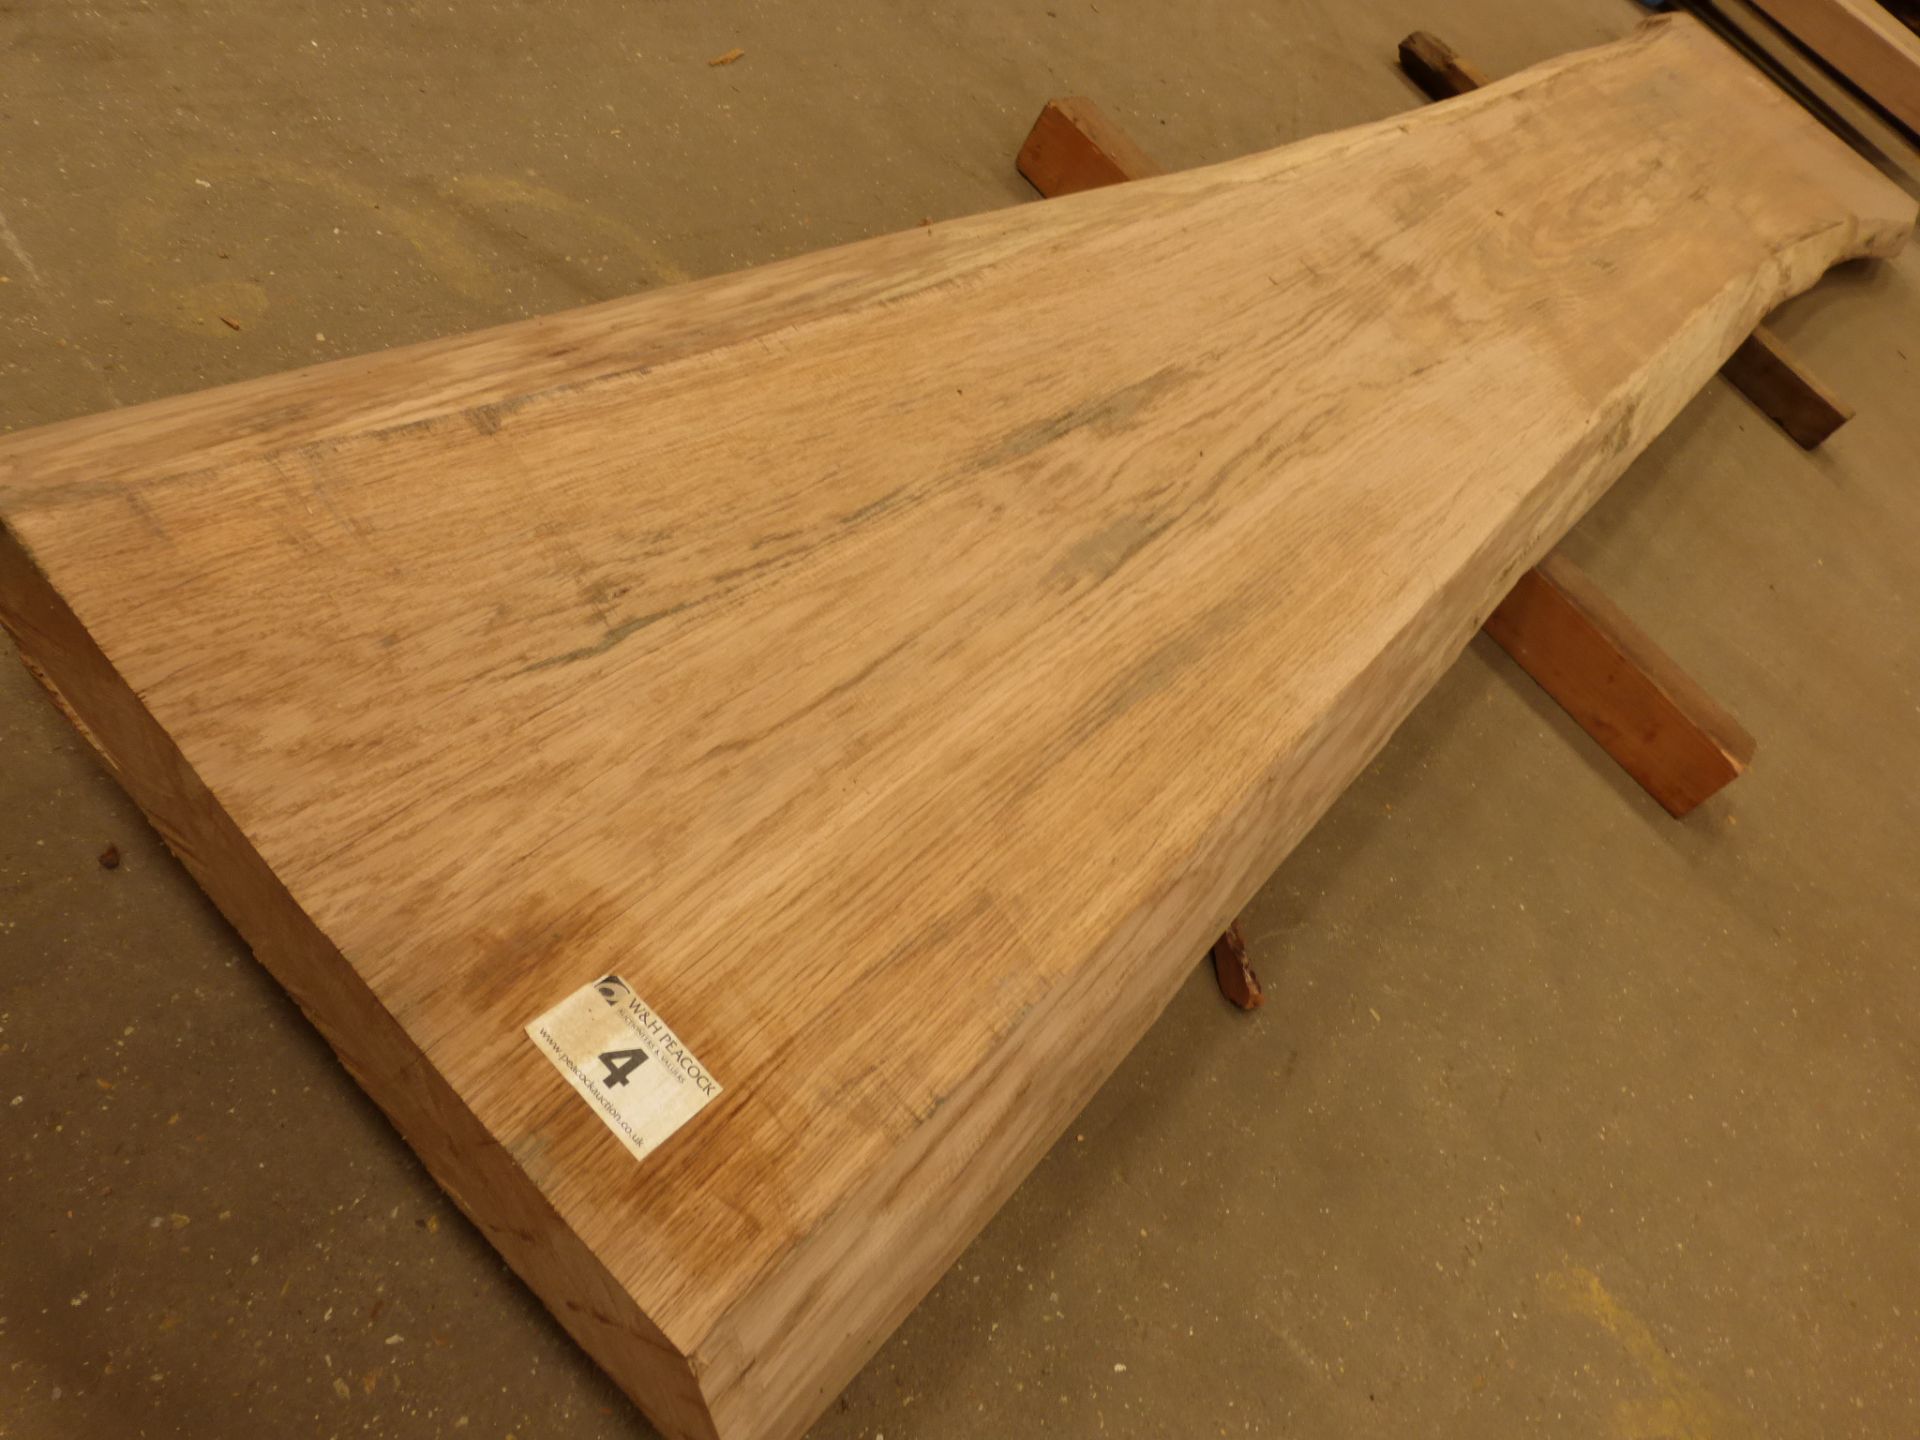 Plank of waney edge oak 3400 x 500 x 60mm